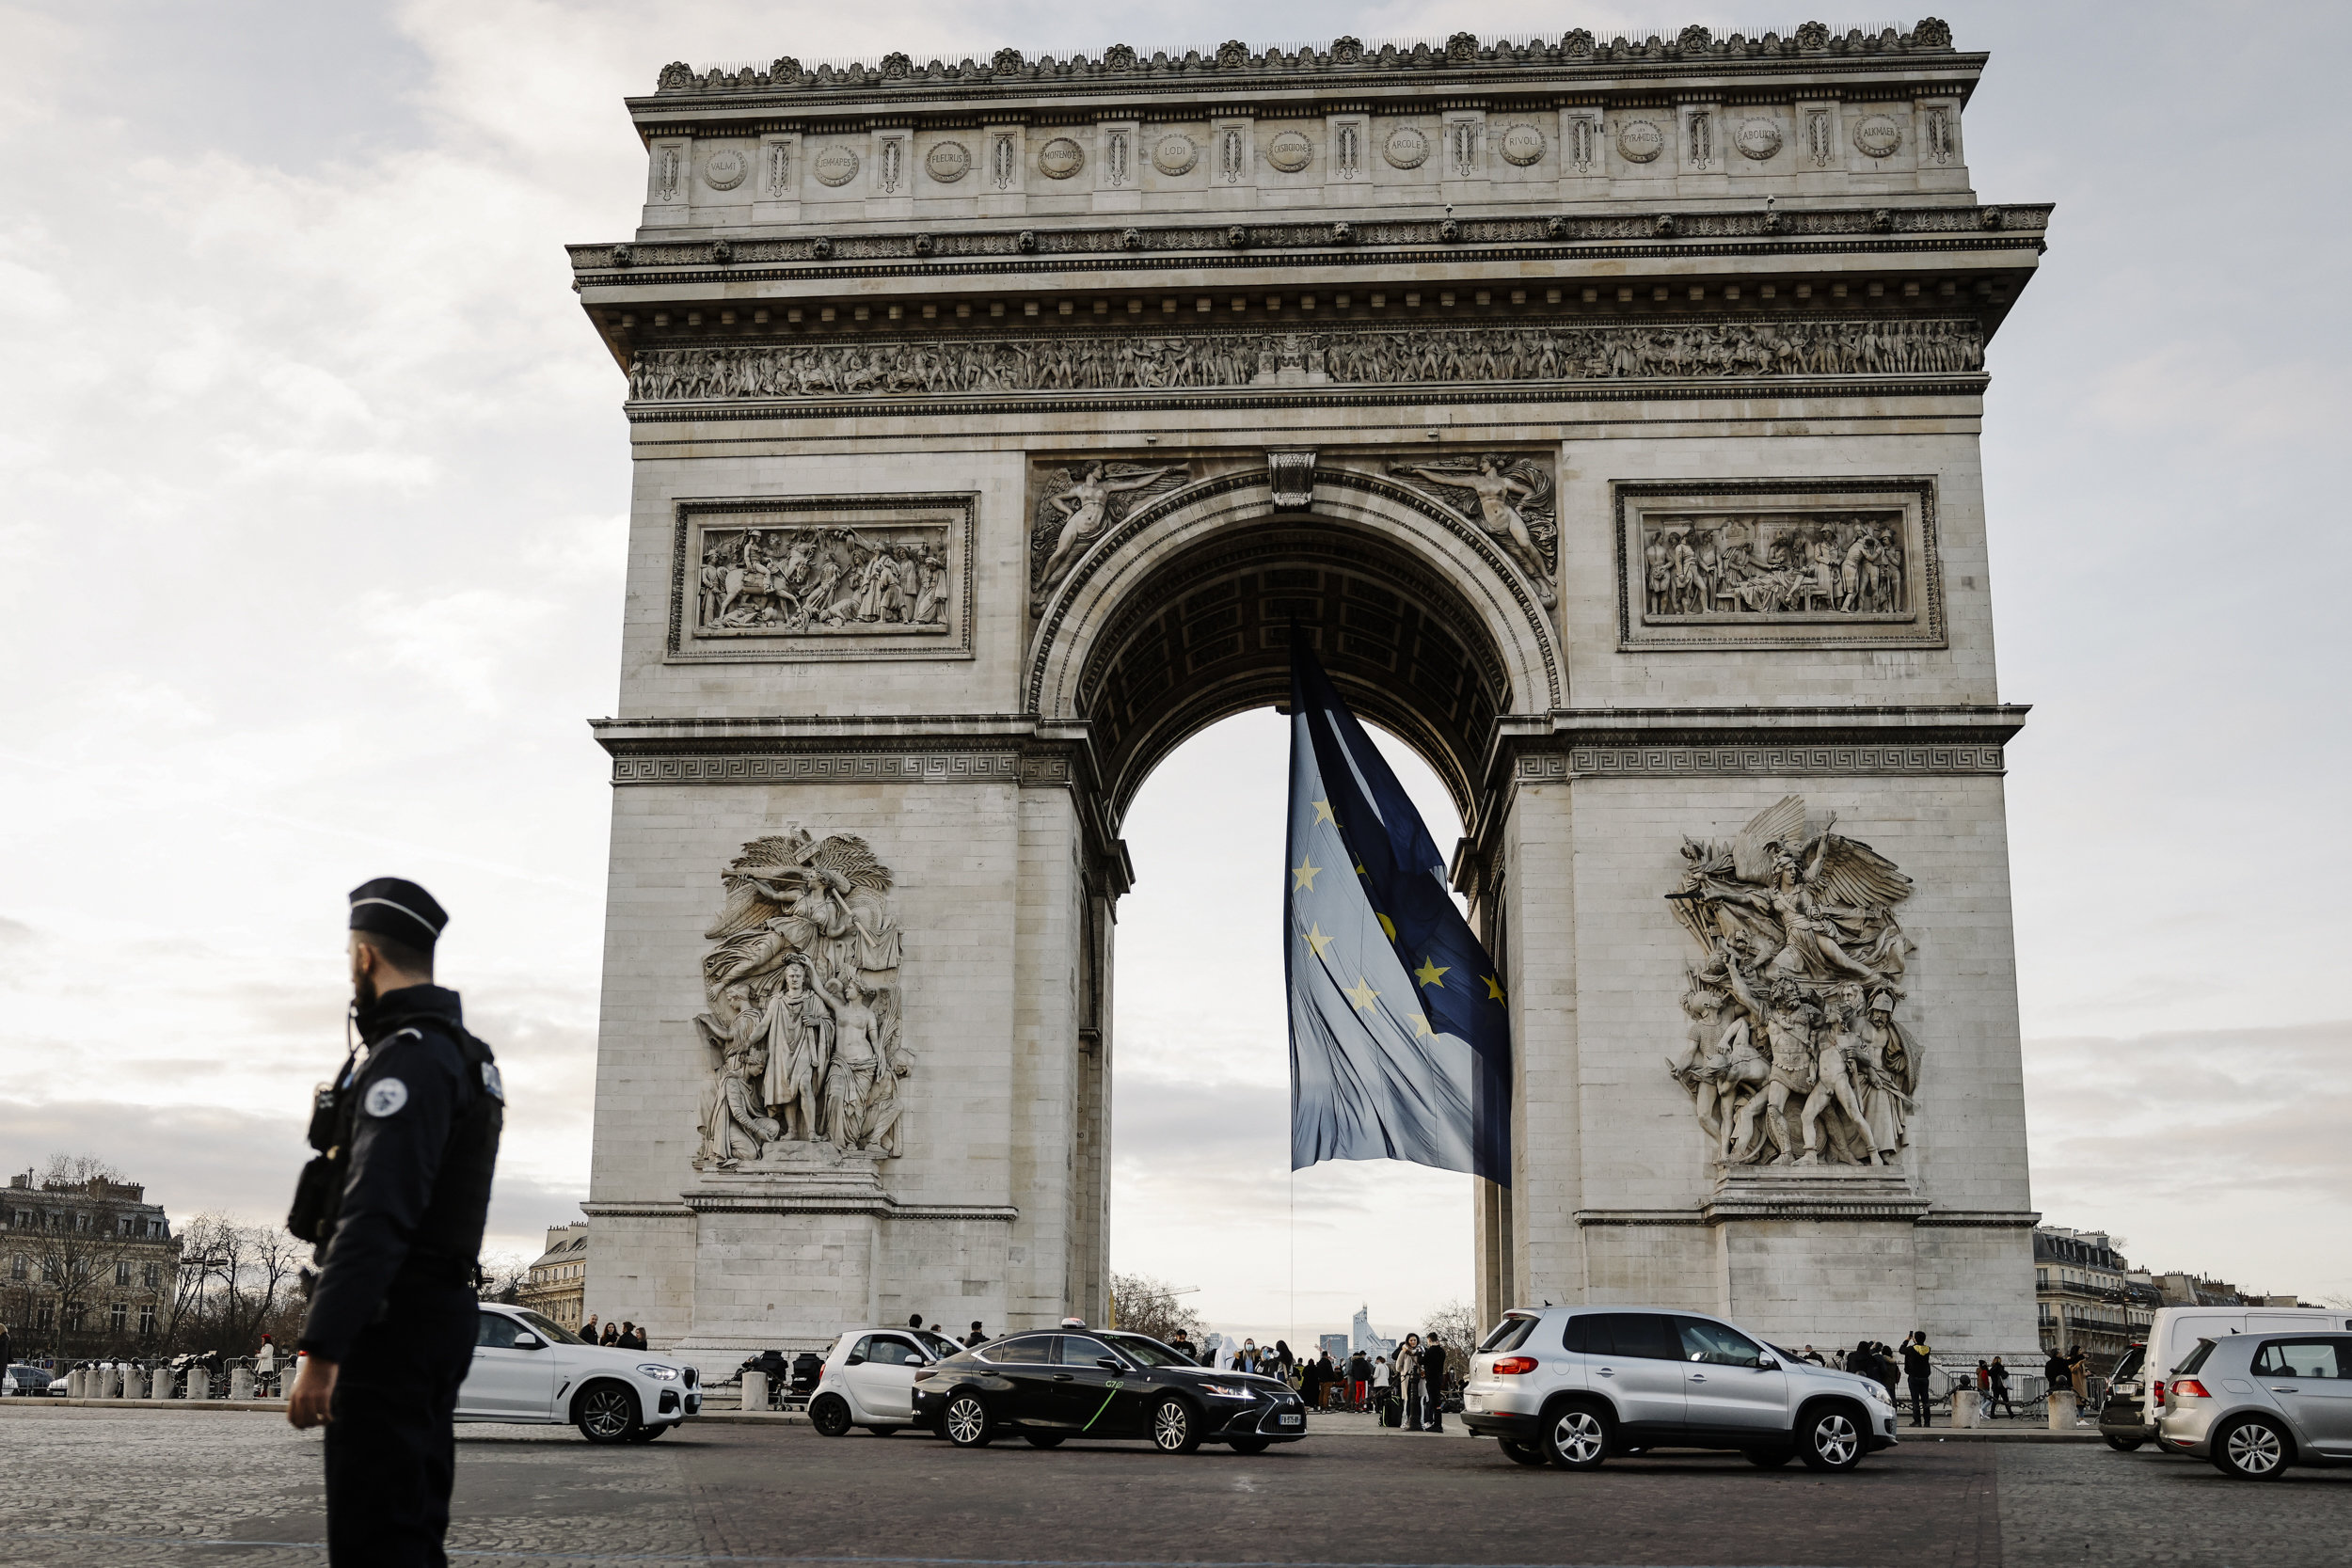 TOUT COMPRENDRE - La polémique du drapeau européen sous l'Arc de Triomphe